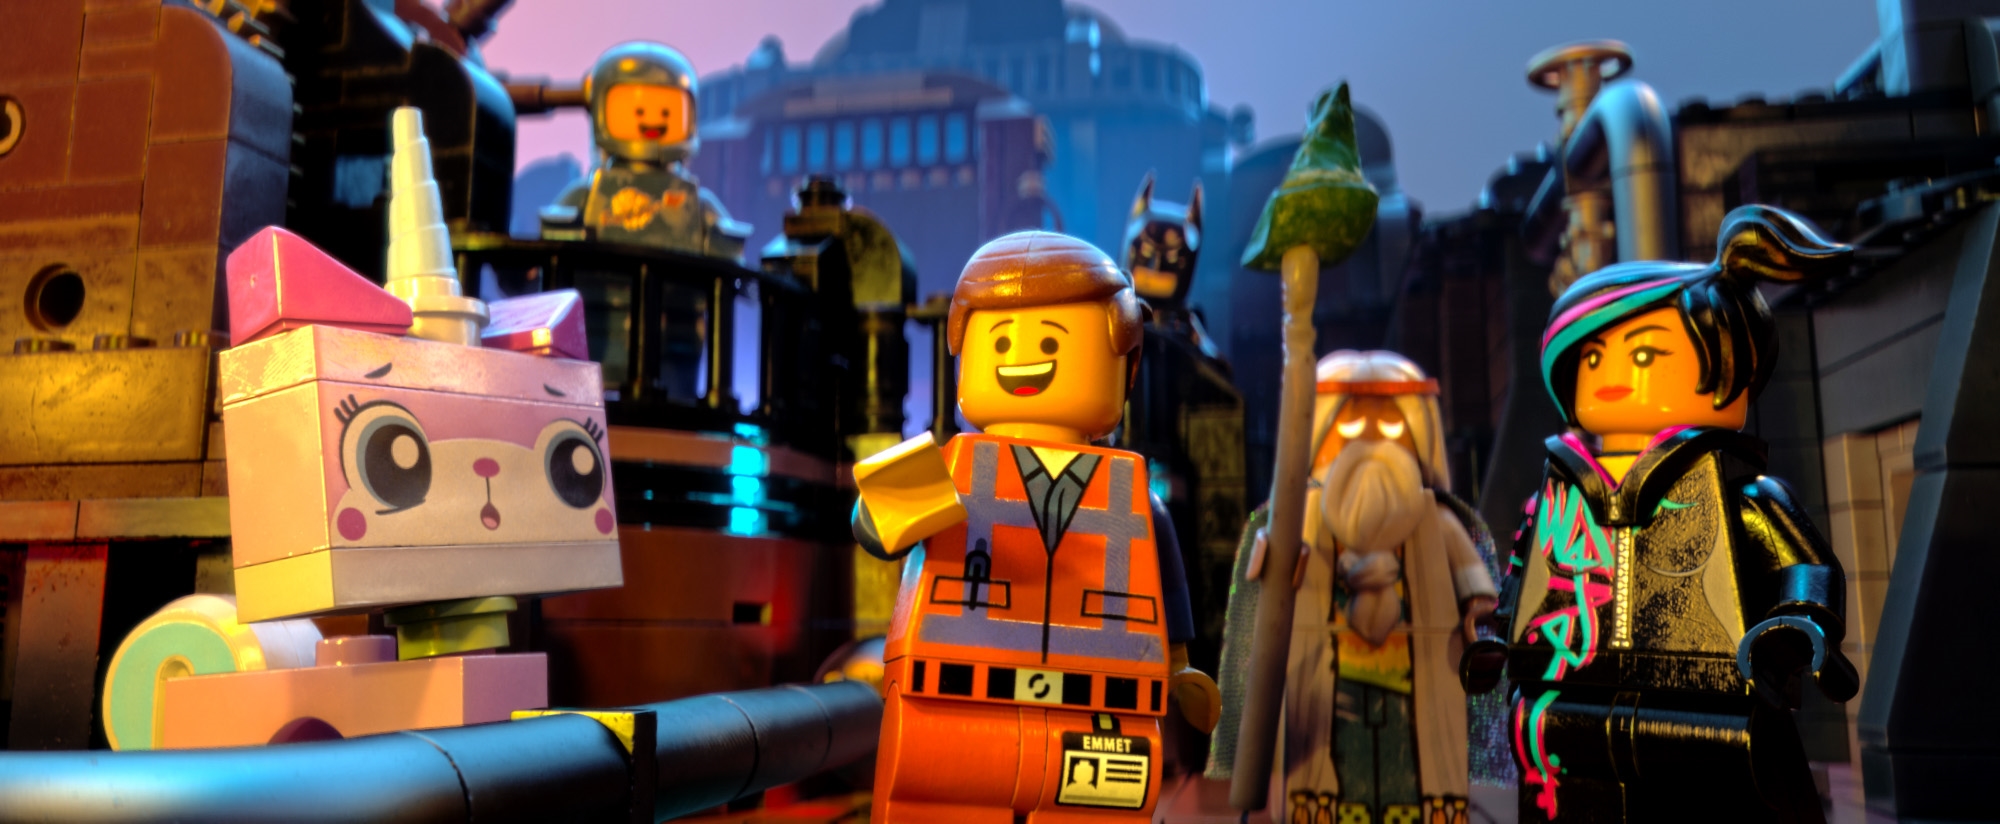 Image du film La Grande Aventure Lego 0f04d64b-1a45-4a03-9ed6-62547238eb17